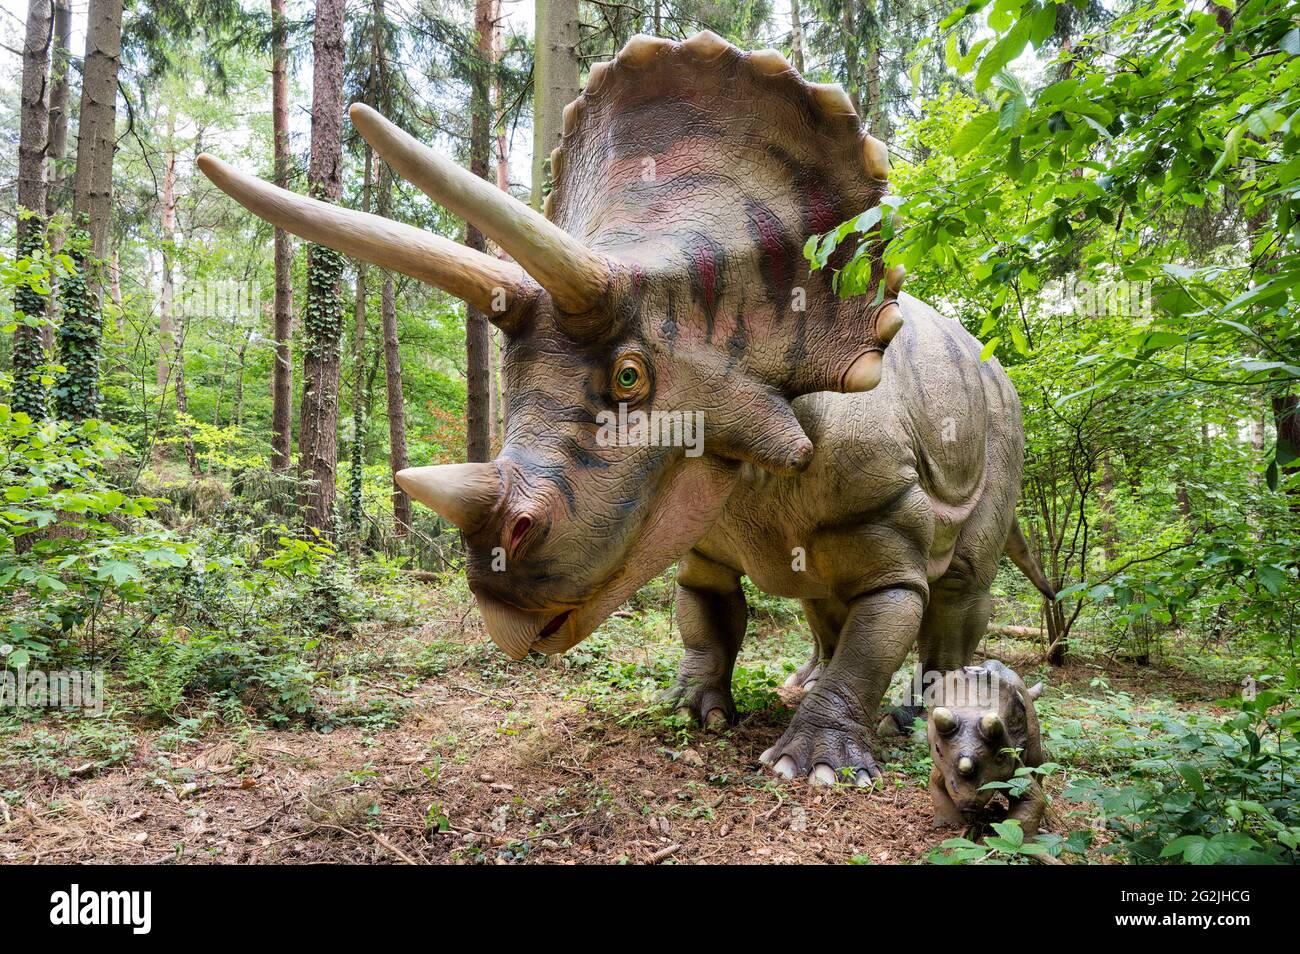 Dinosaure Triceratops avec un jeune animal comme modèles à Dinopark Münchehagen près de Hanovre. Vécu en Amérique du Nord il y a environ 66 millions d'années (fin de la période du Crétacé), est devenu d'environ 9m de long et 6t en poids. Banque D'Images